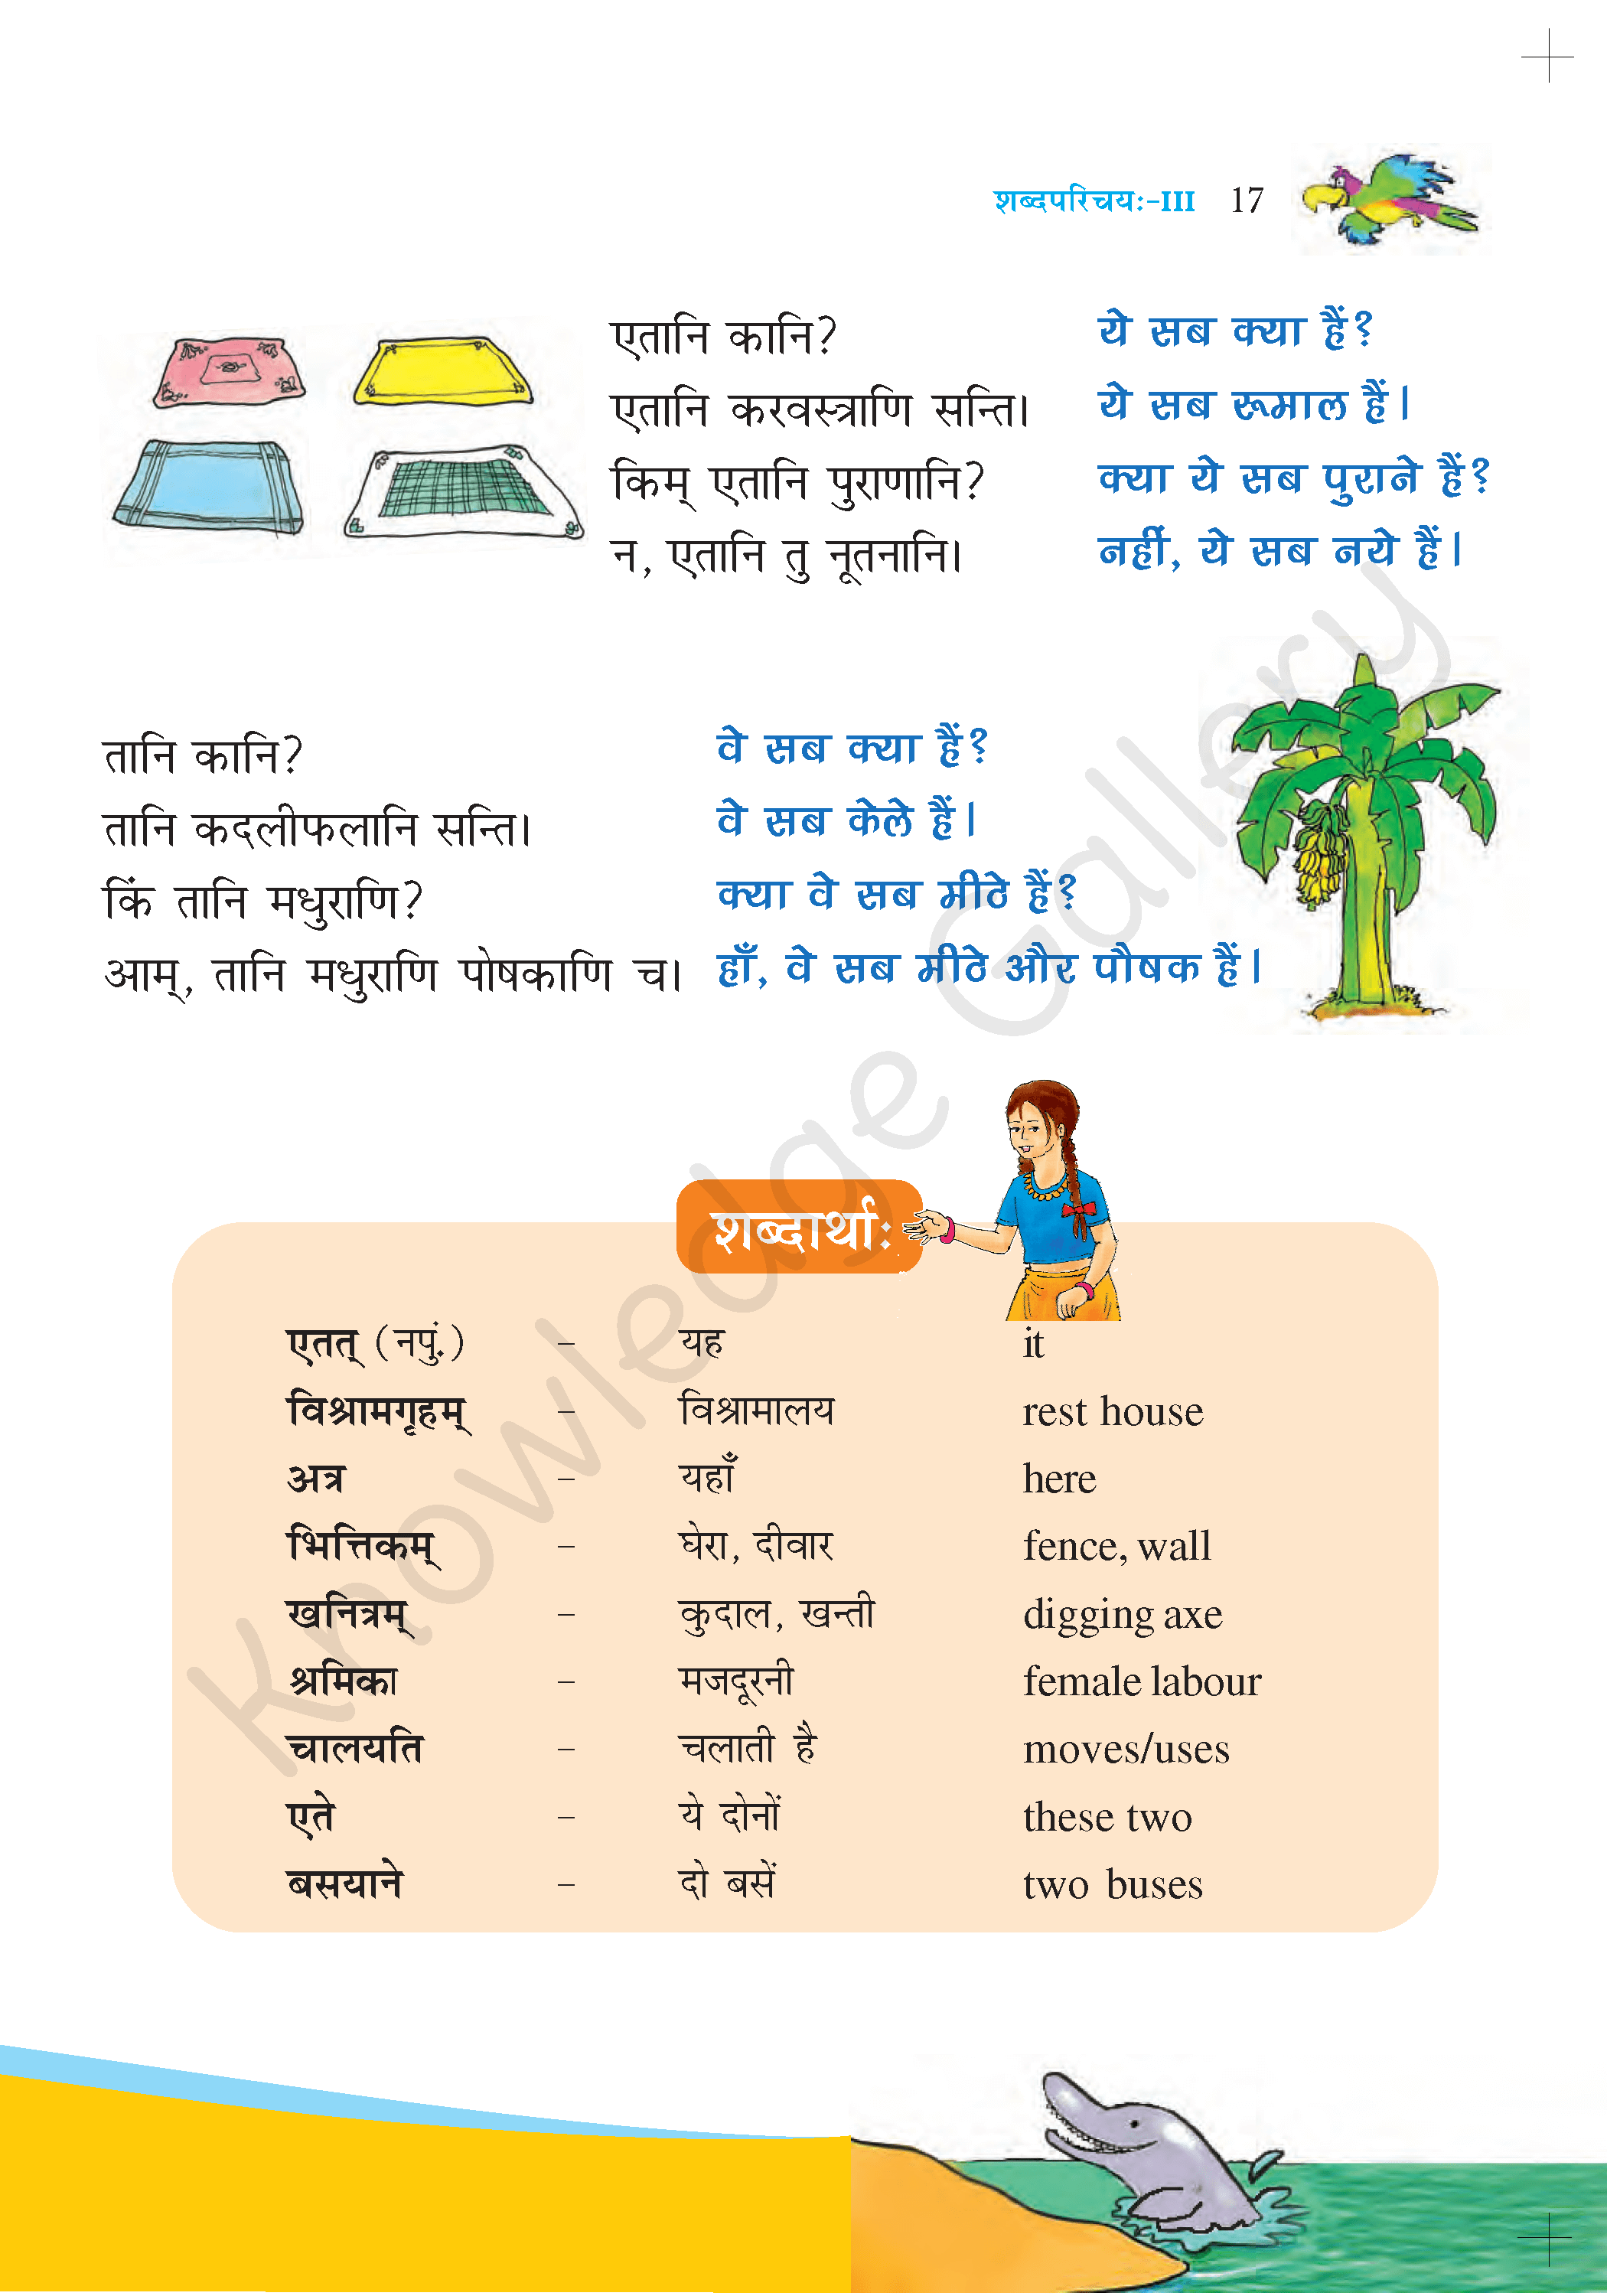 NCERT Solution For Class 6 Sanskrit Chapter 3 part 2